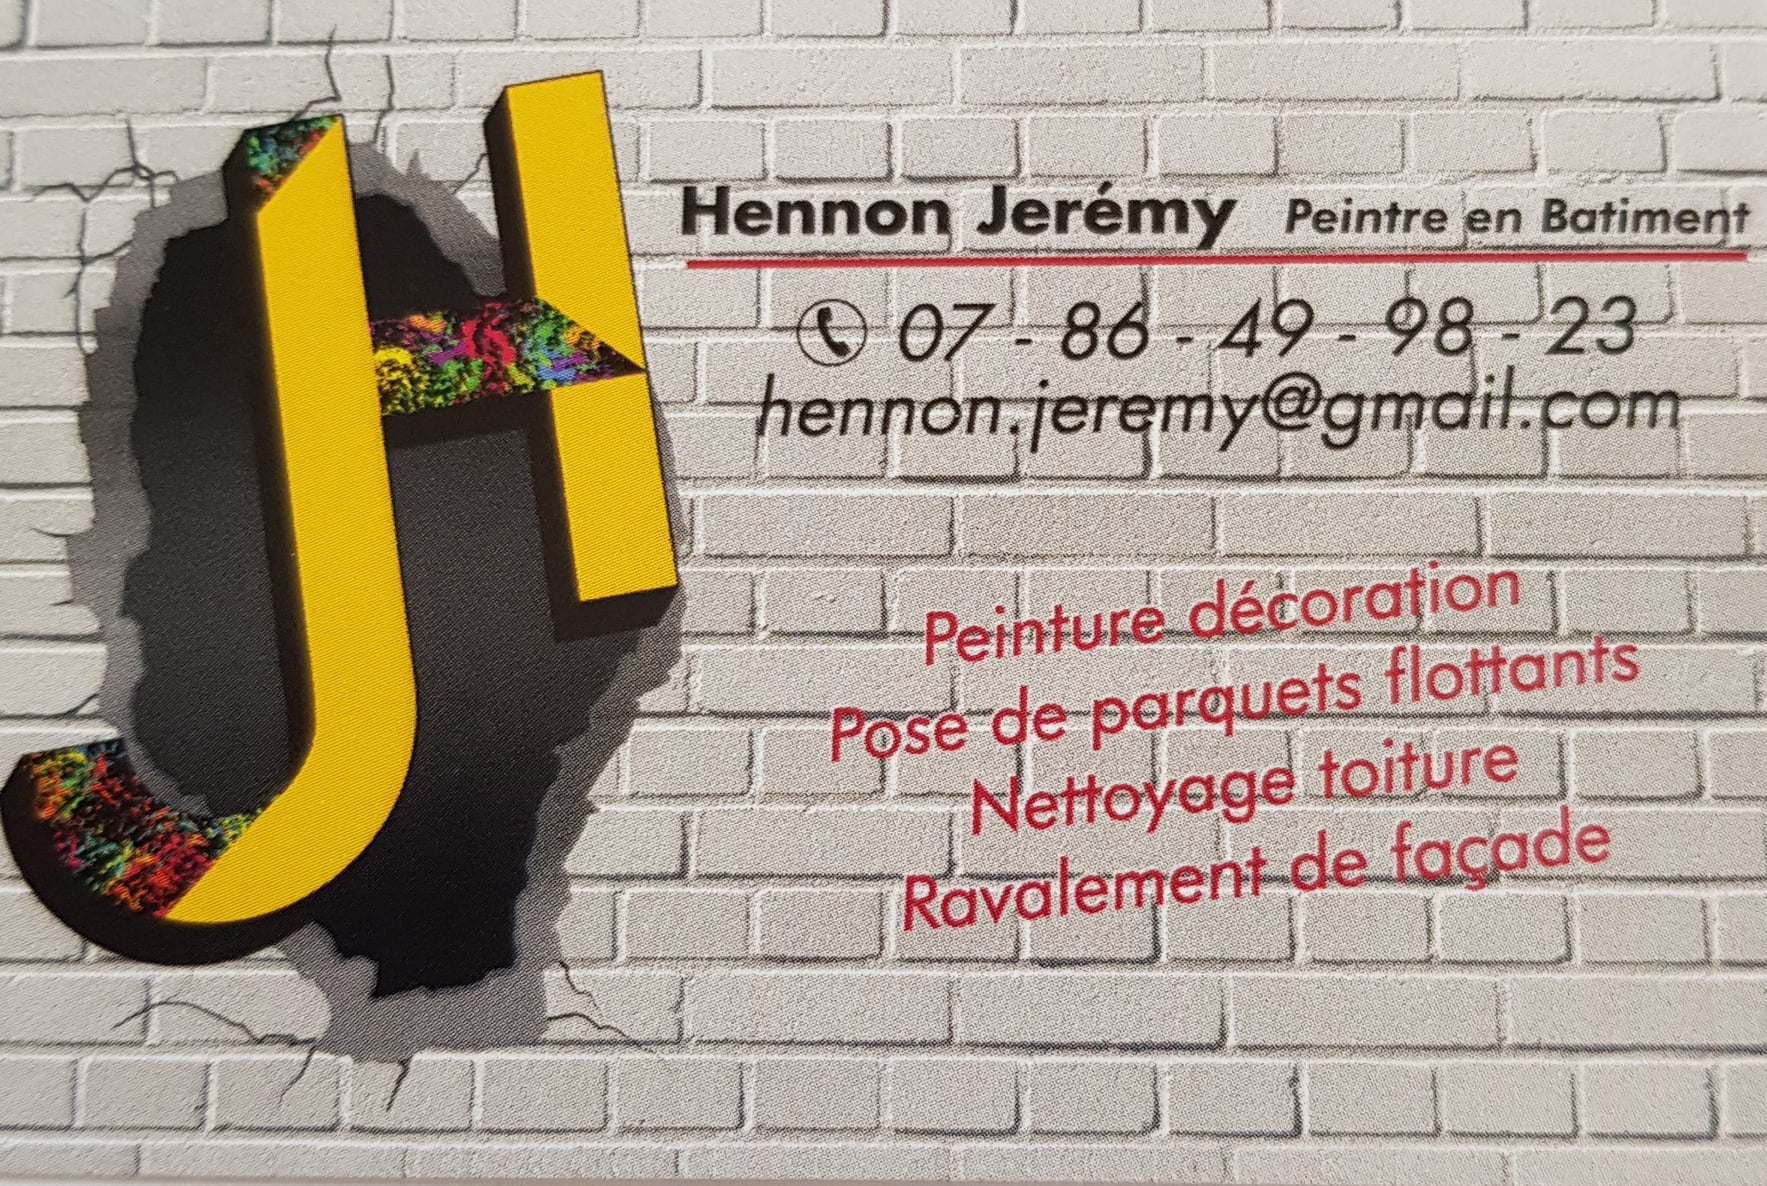 HENNON JEREMY